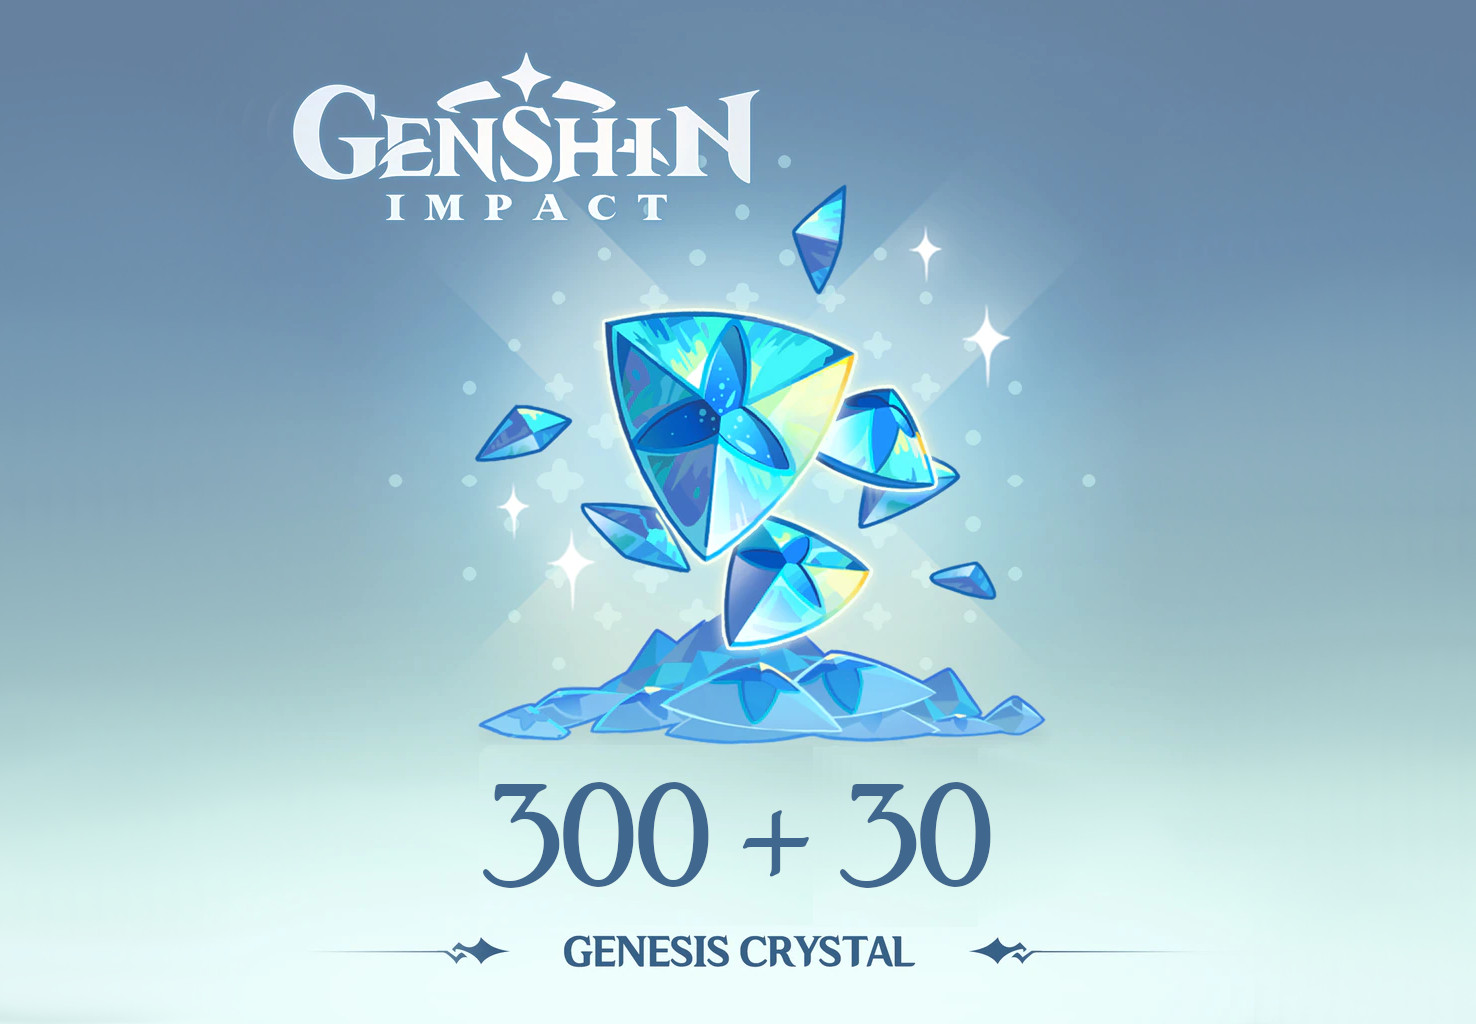 (5.37$) Genshin Impact - 300 + 30 Genesis Crystals Reidos Voucher